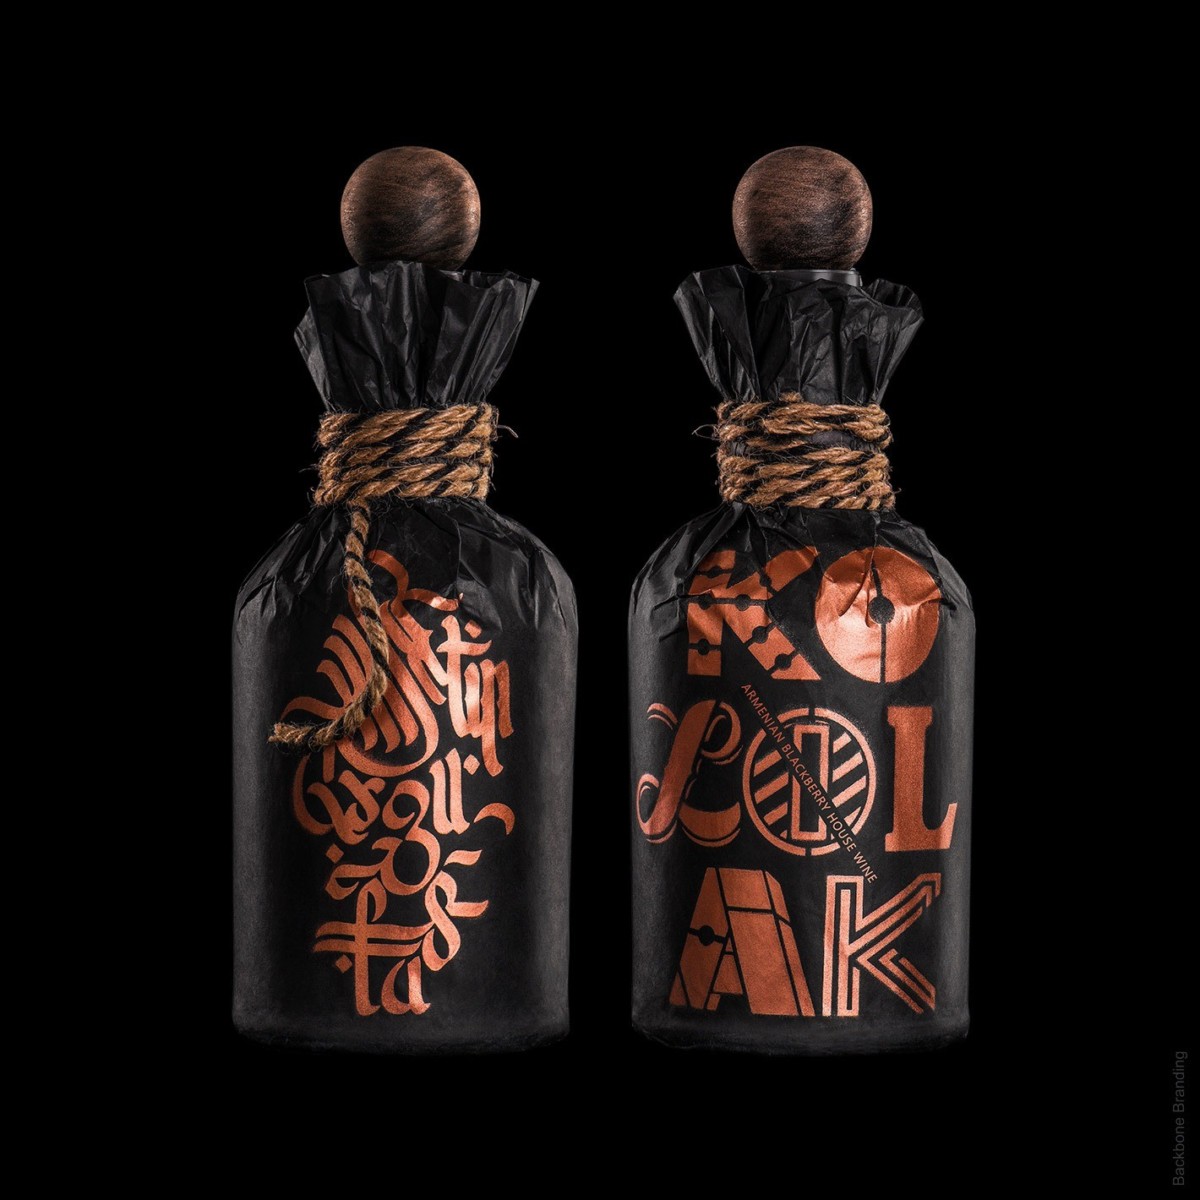 亚美尼亚民族风情的Kololak葡萄酒包装